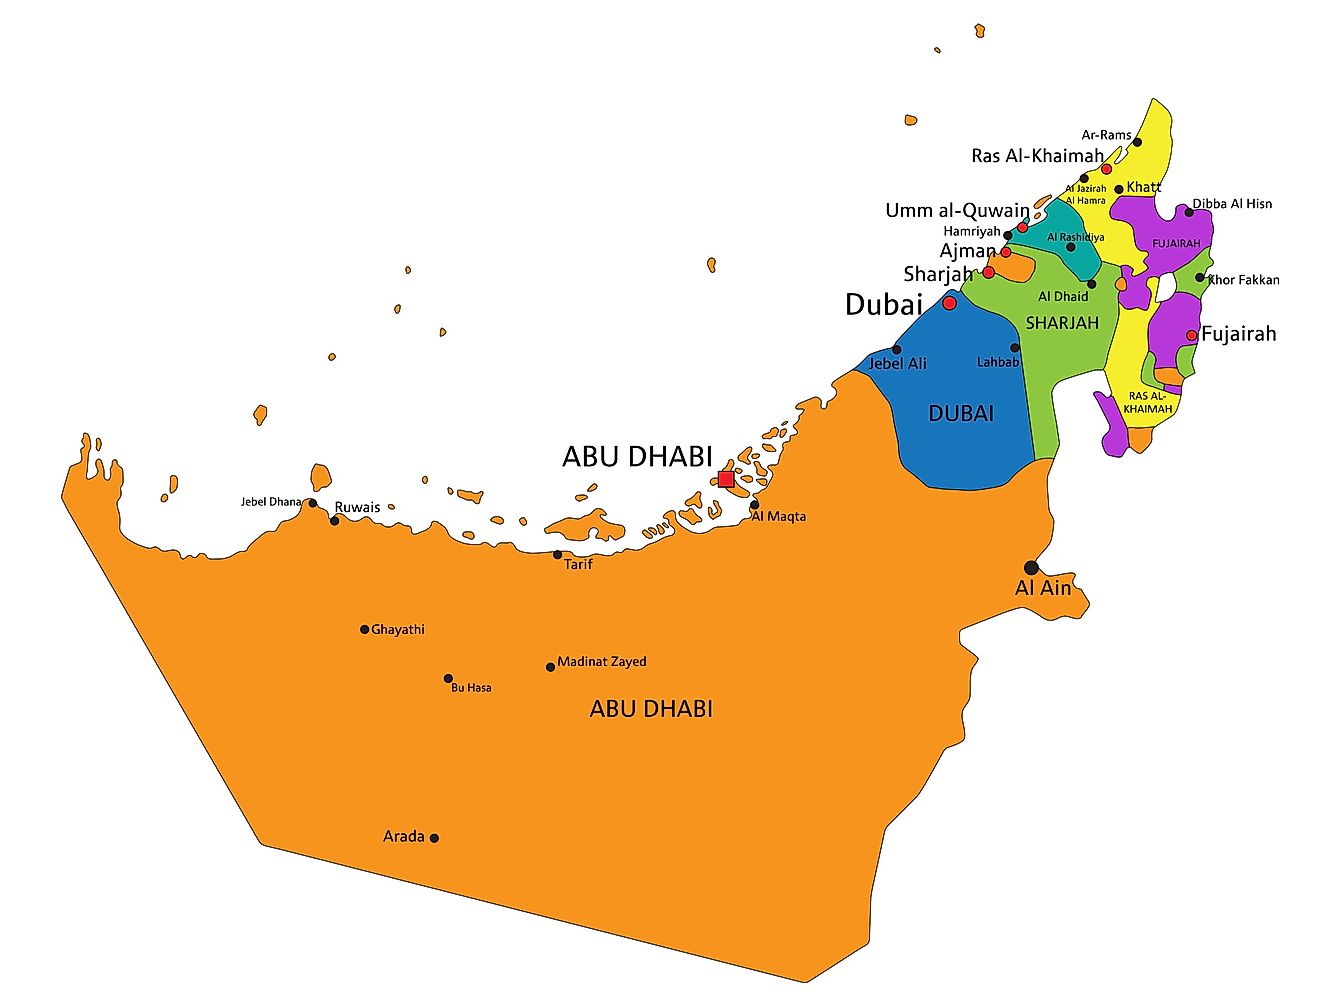 Mapa político de los Emiratos Árabes Unidos (EAU) que muestra los 7 Emiratos.